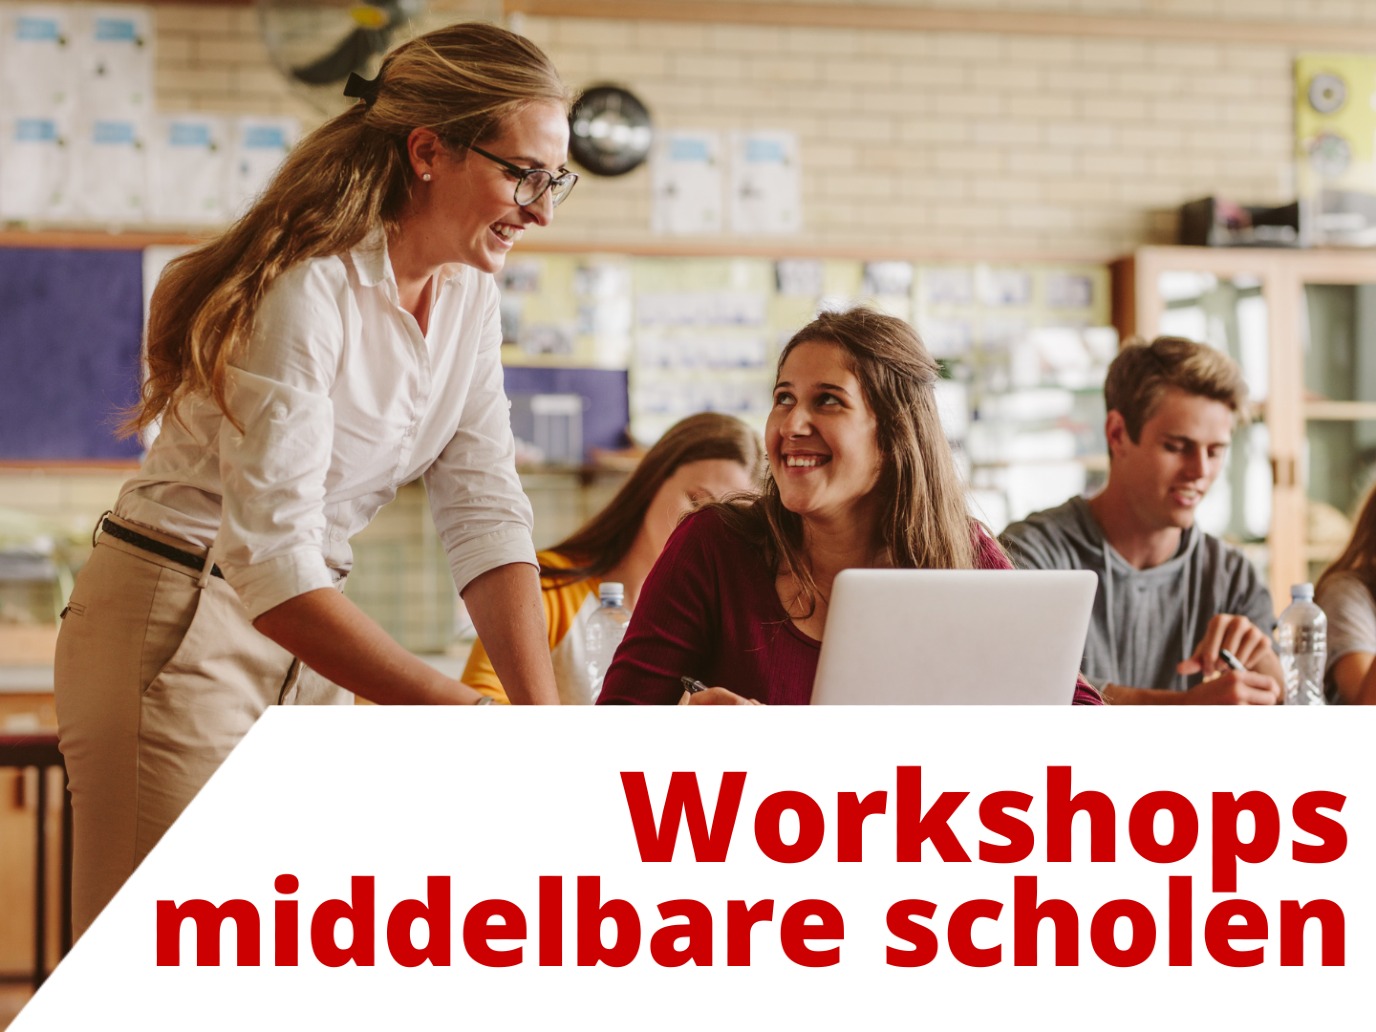 Workshops voor middelbare scholieren